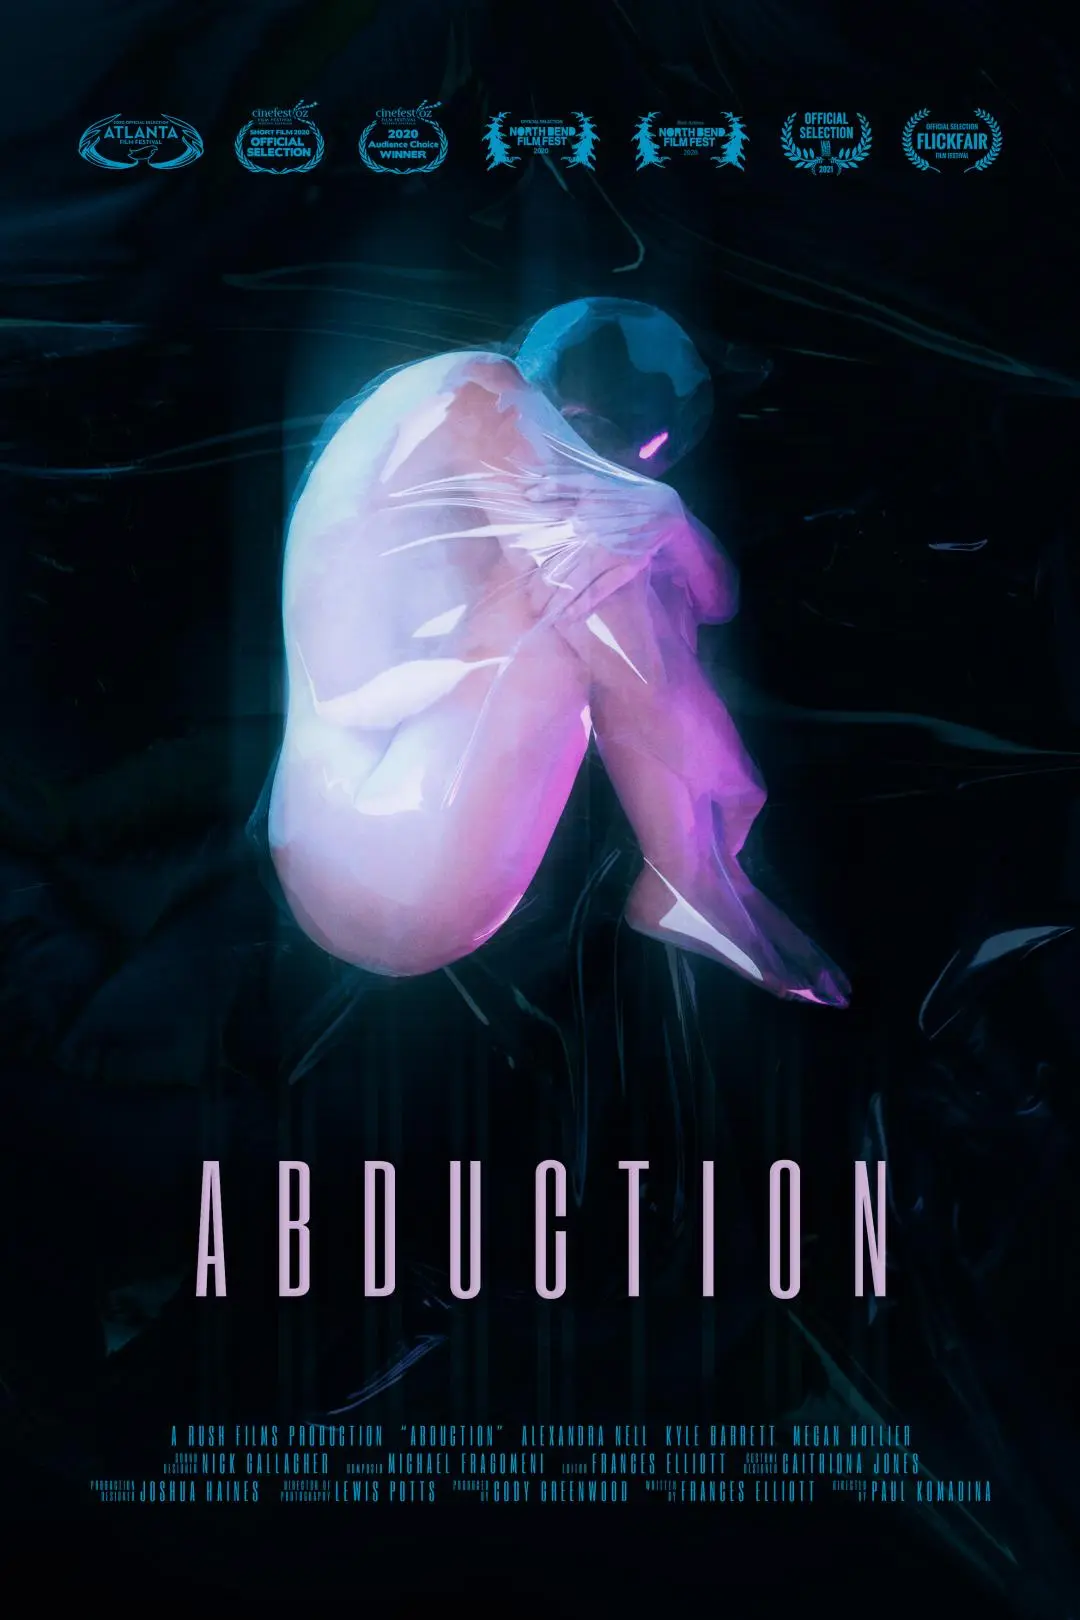 Abduction_peliplat